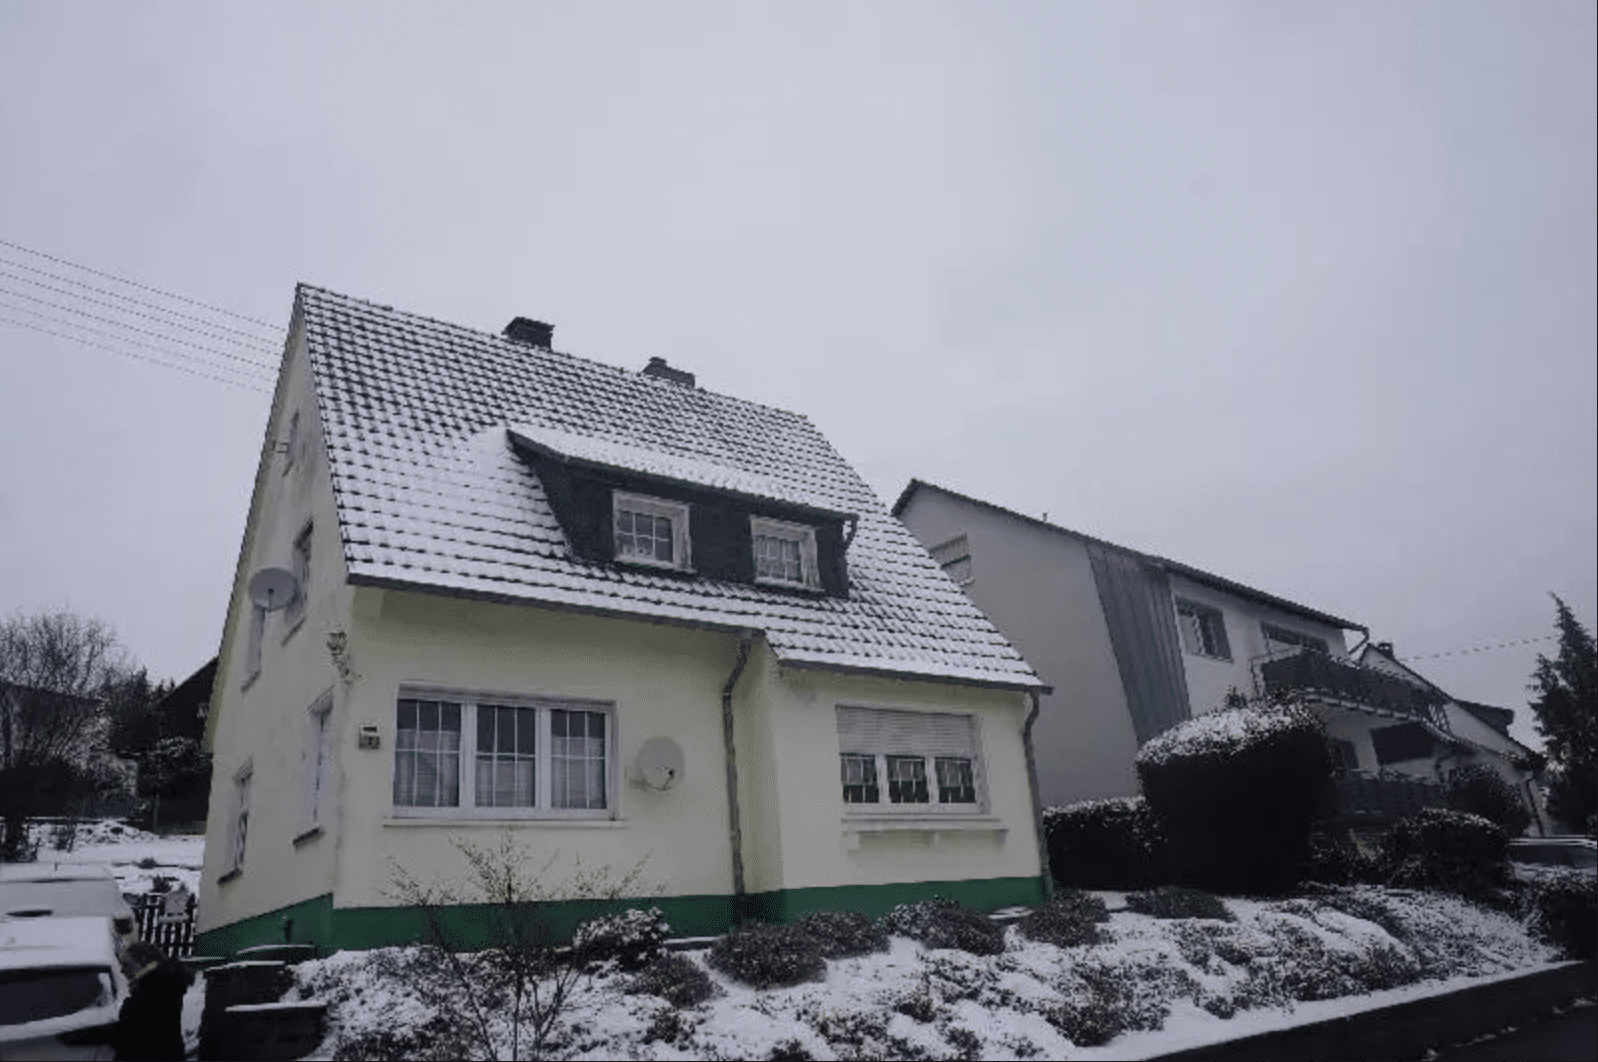 E-Mail-Anfrage an einen Immobilienmakler in Königswinter bezüglich einer exklusiven Immobilie in Bad Honnef.